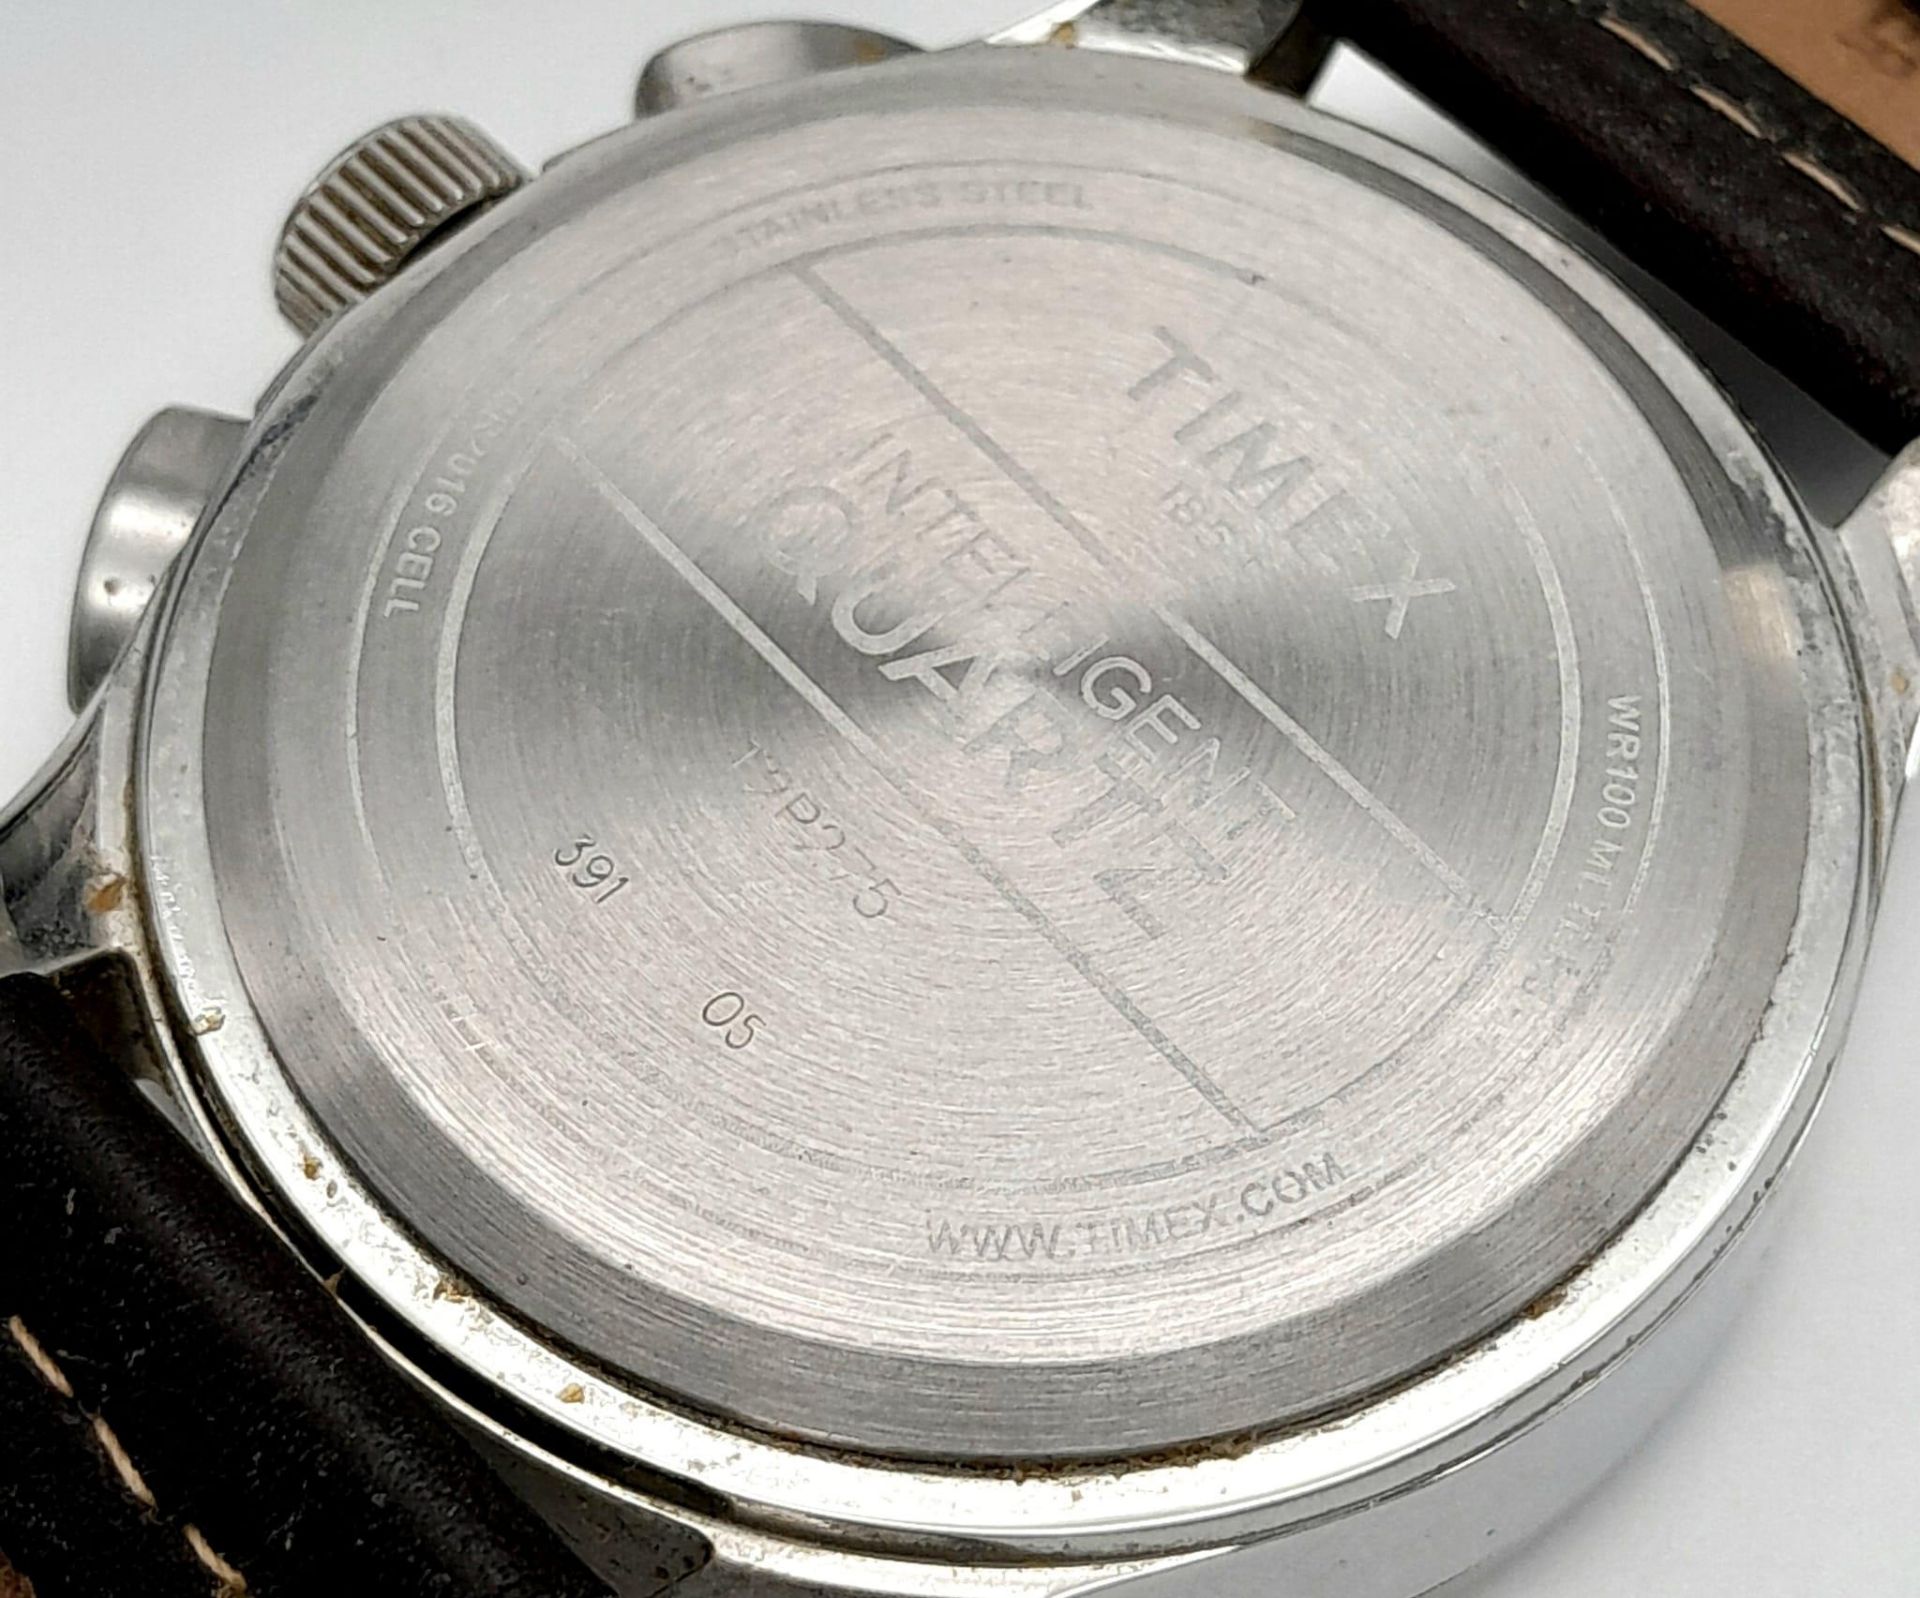 A Timex Intelligent Chronograph Quartz Gents Watch. Brown leather strap. Stainless steel case - - Bild 5 aus 6